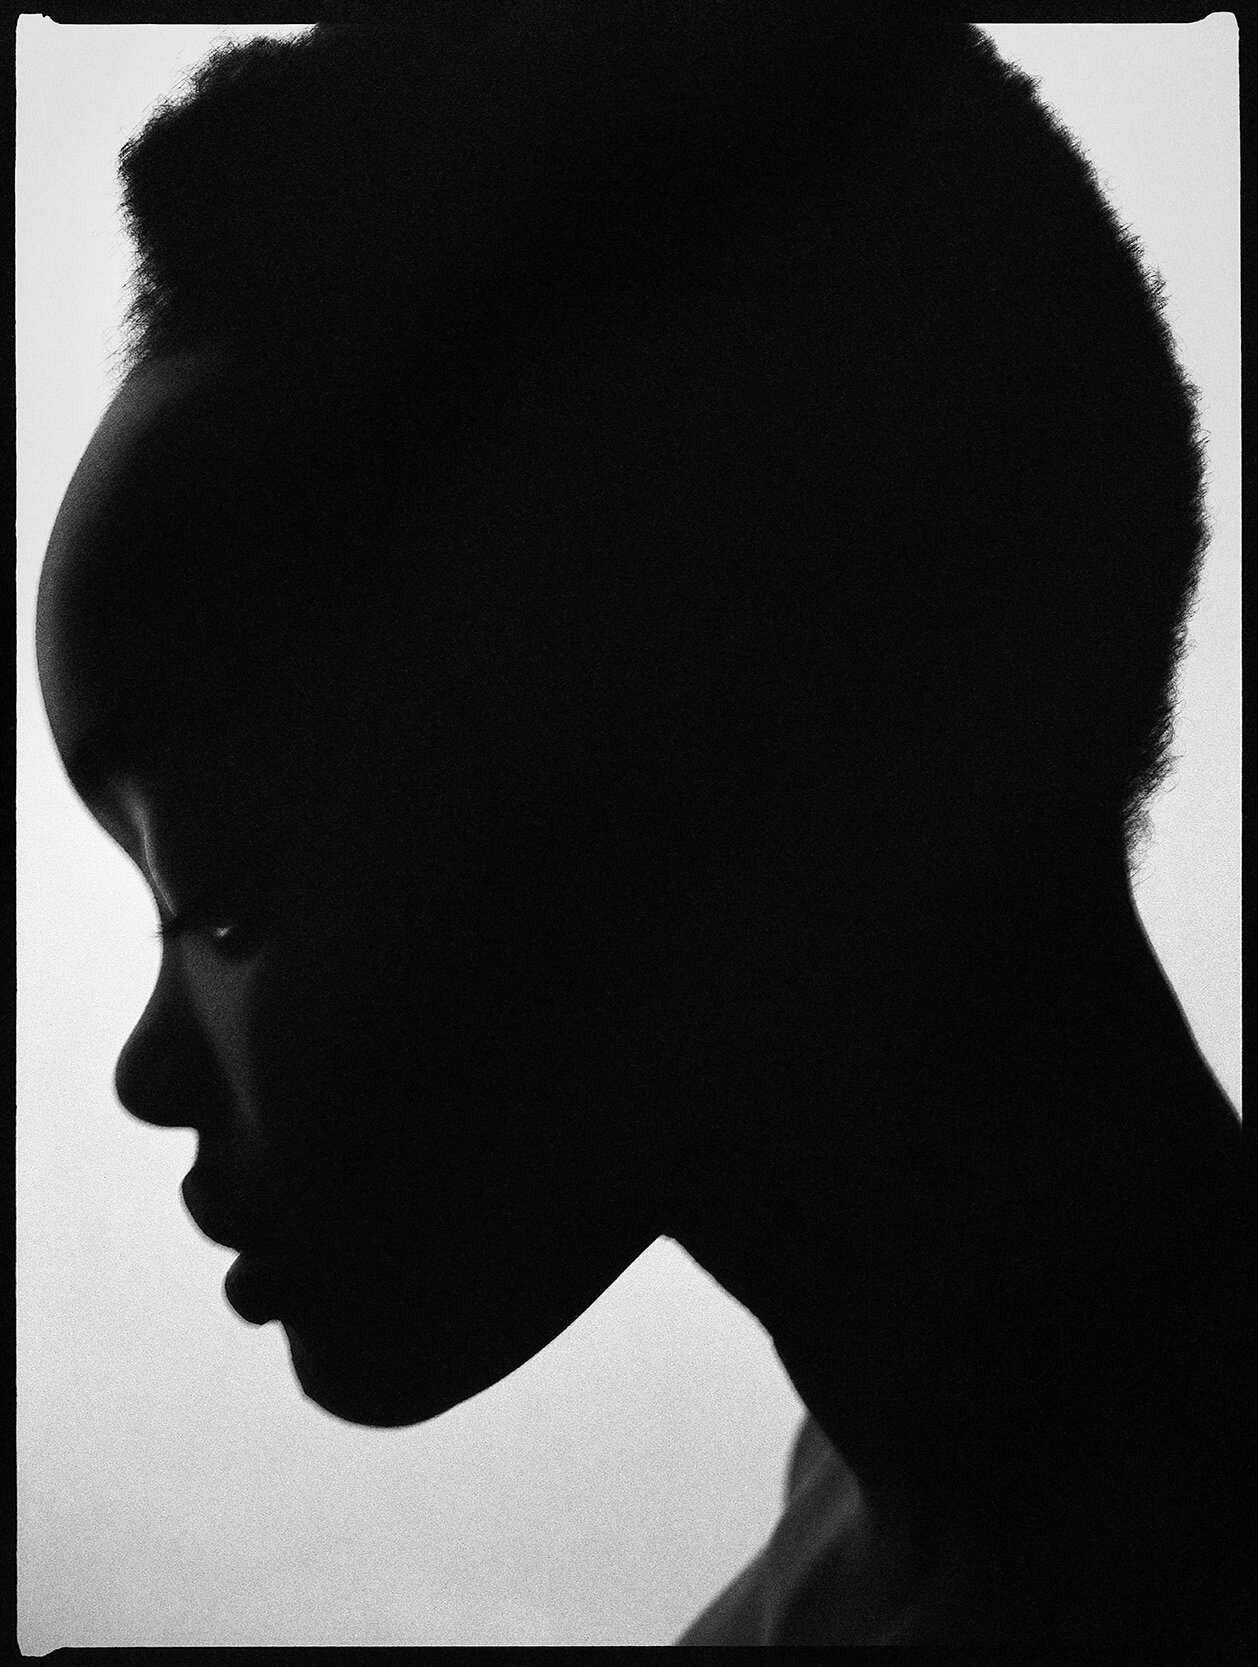 Yacine-Diop-Inter-Quietness-B&W-Portrait-Matthew-Coleman-Photography-4.jpg